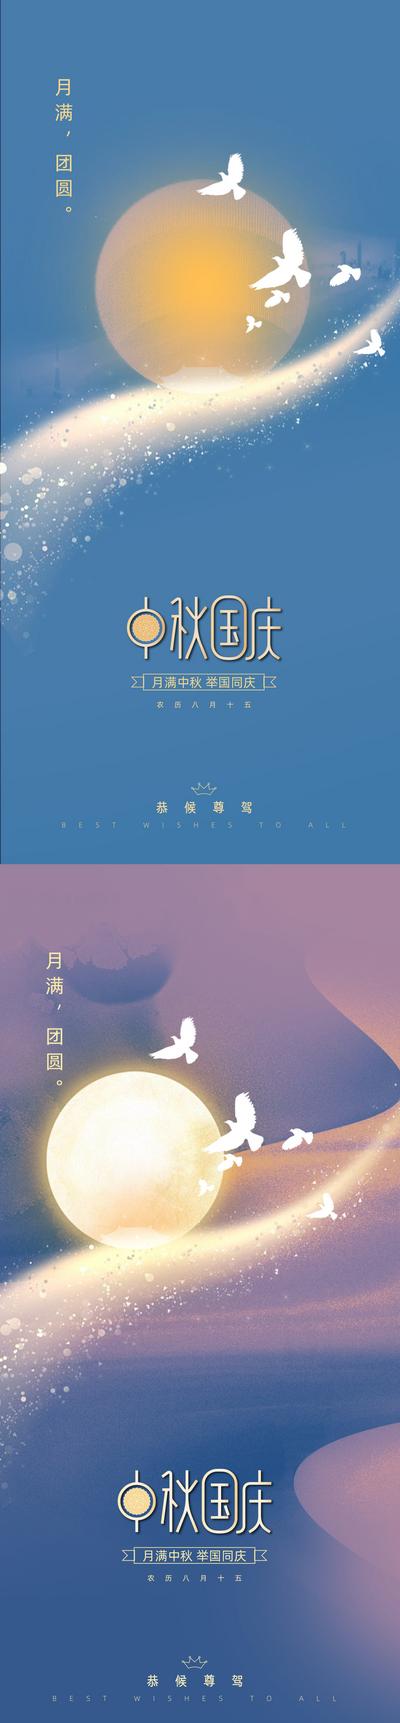 南门网 海报 中国传统节日 中秋节 公历节日 国庆节 月亮